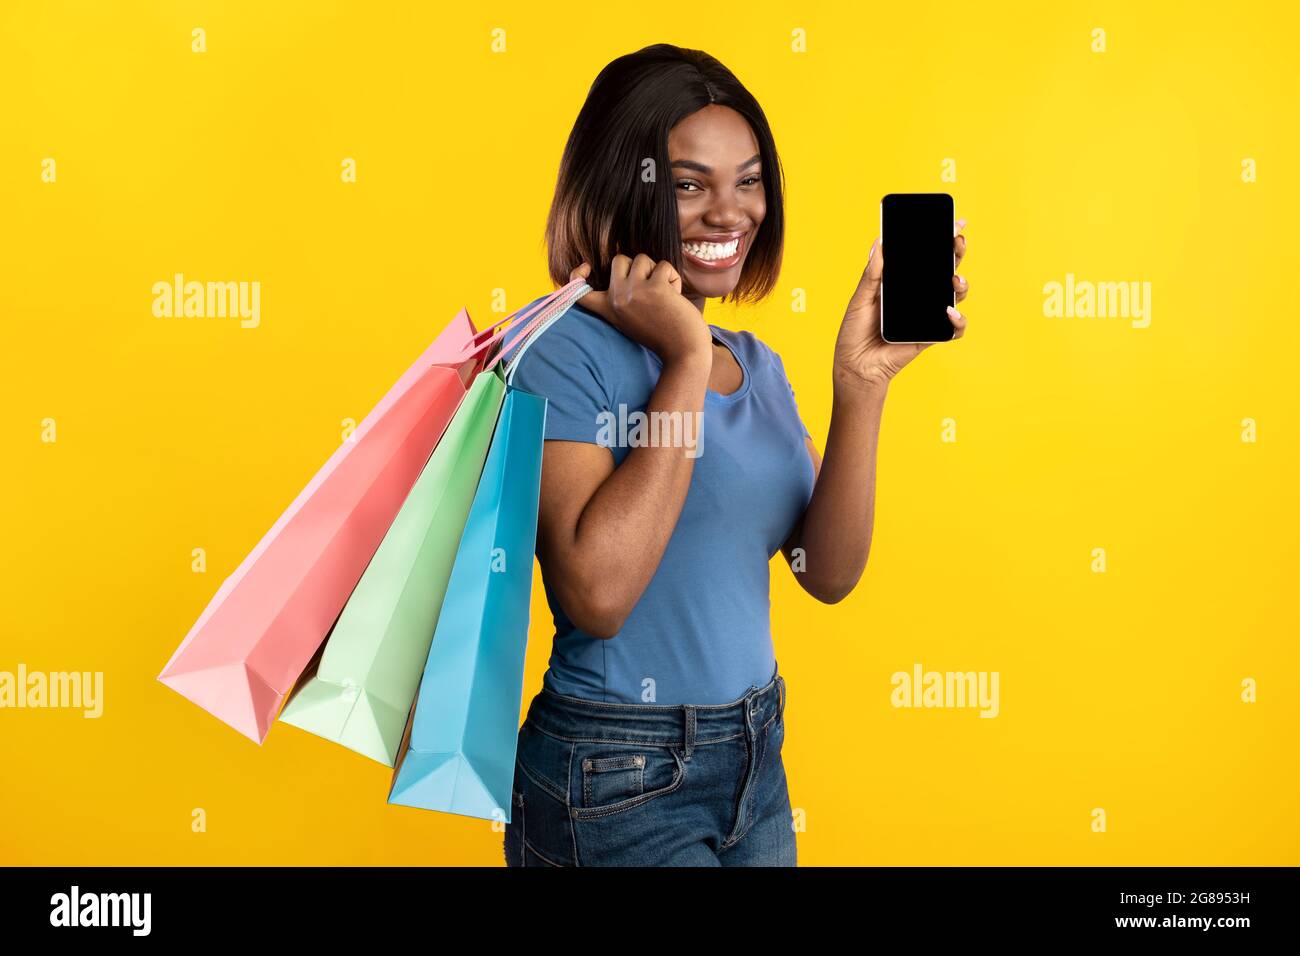 Noir lady montrant l'écran du téléphone contenant des sacs d'achats, fond jaune Banque D'Images